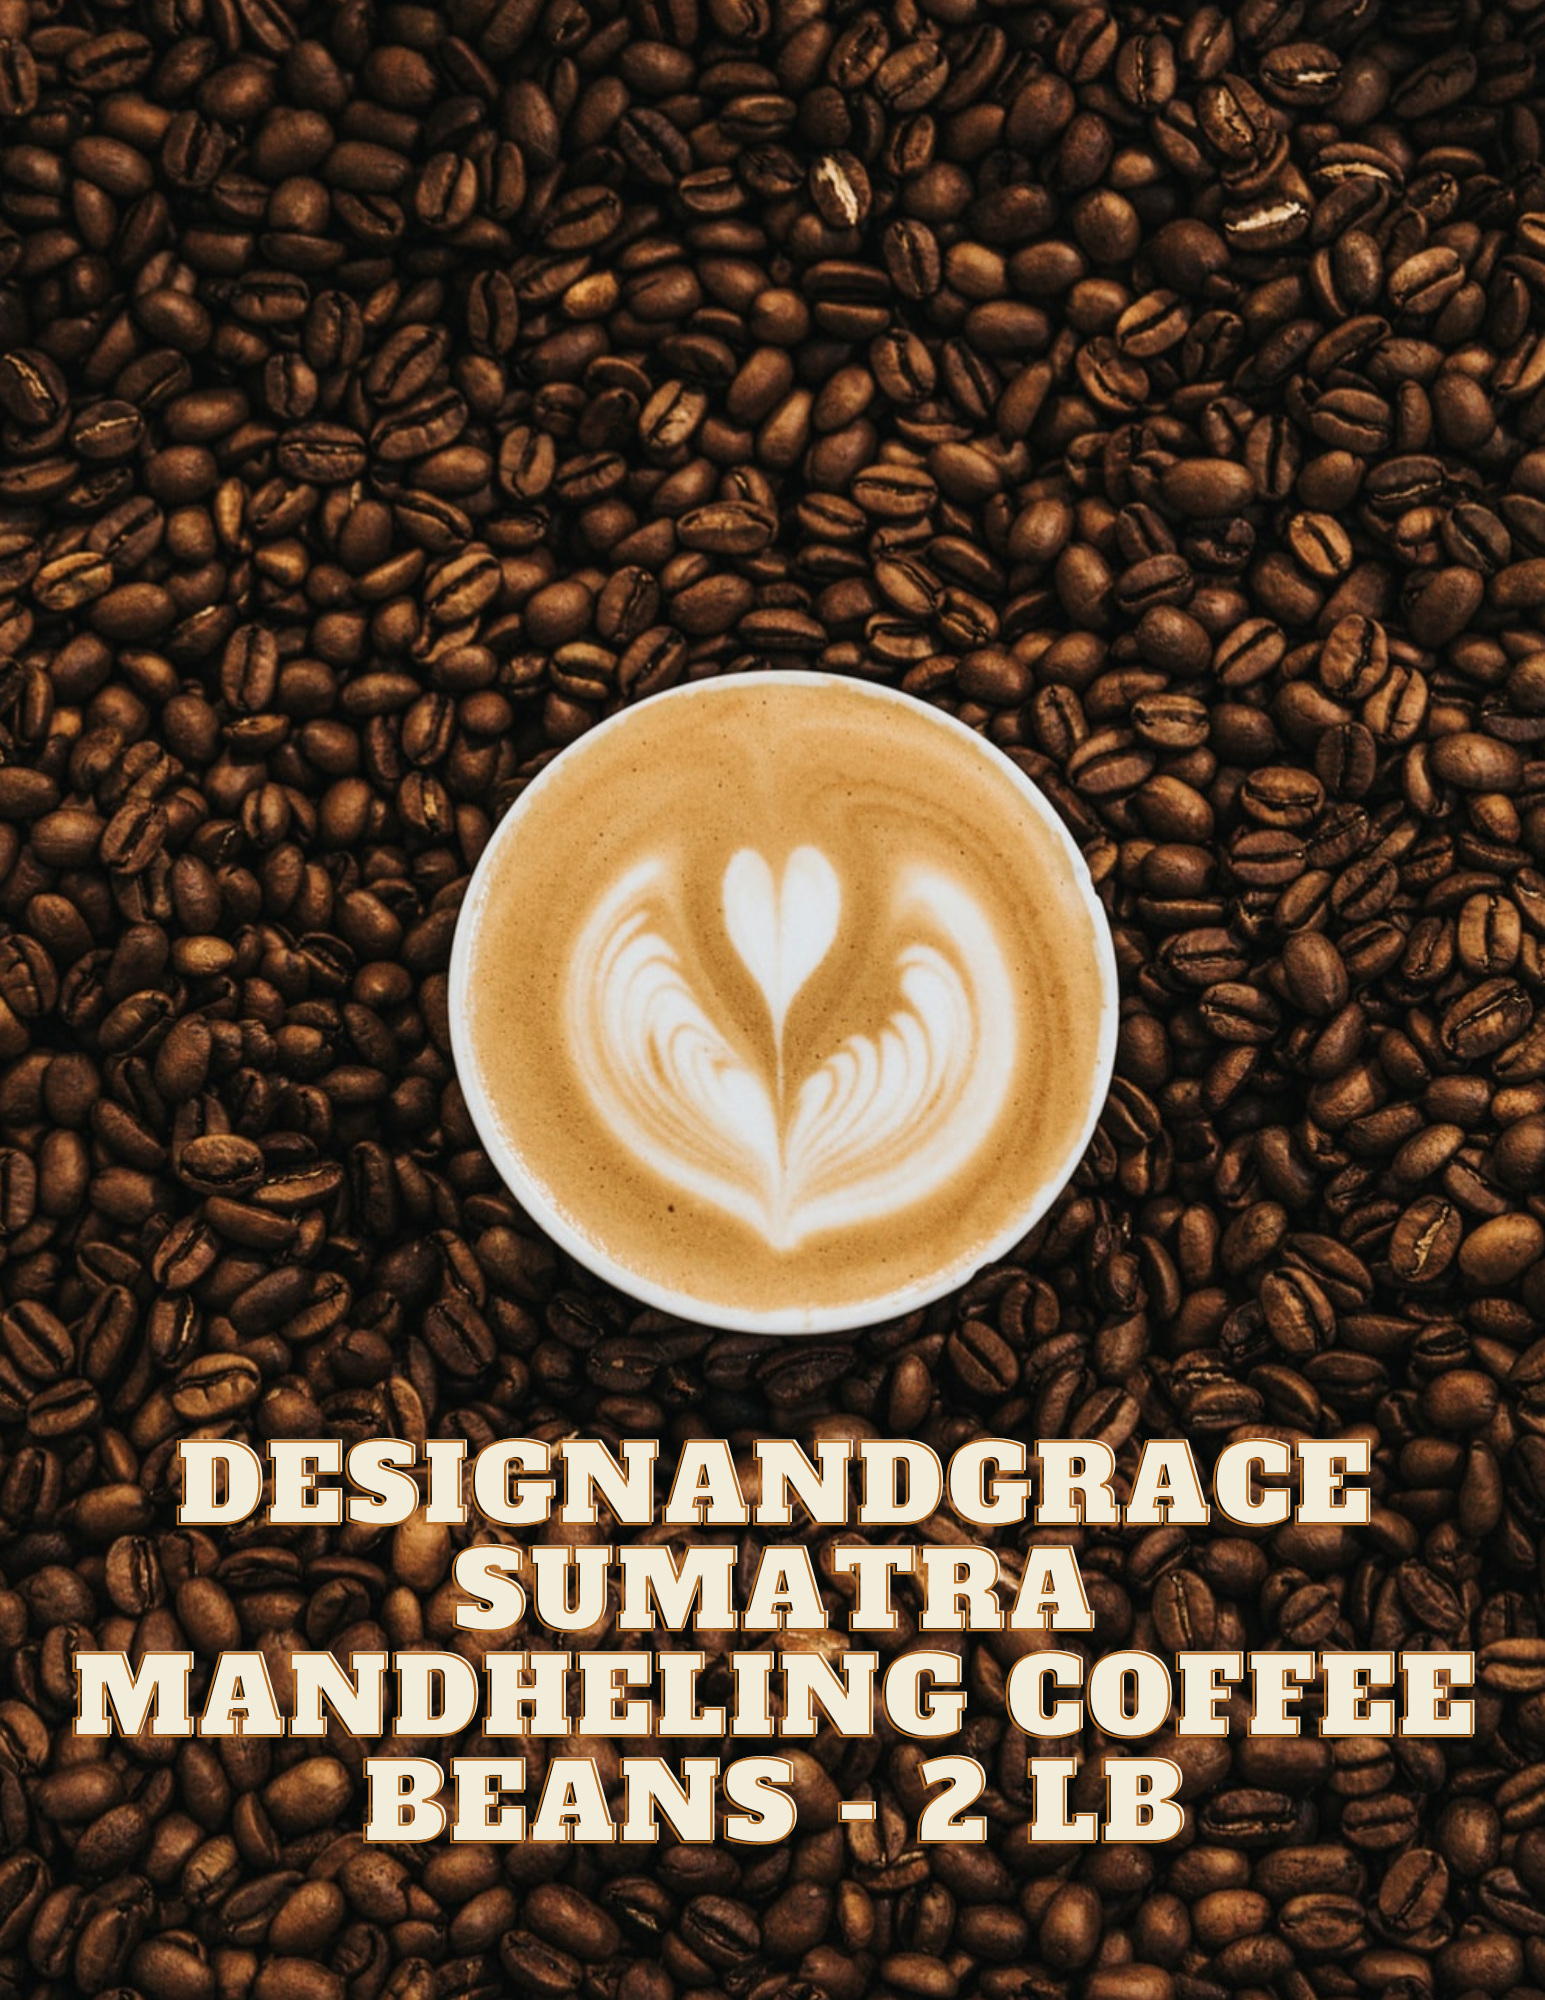 DesignandGrace Sumatra Mandheling Coffee Beans - 2 lb